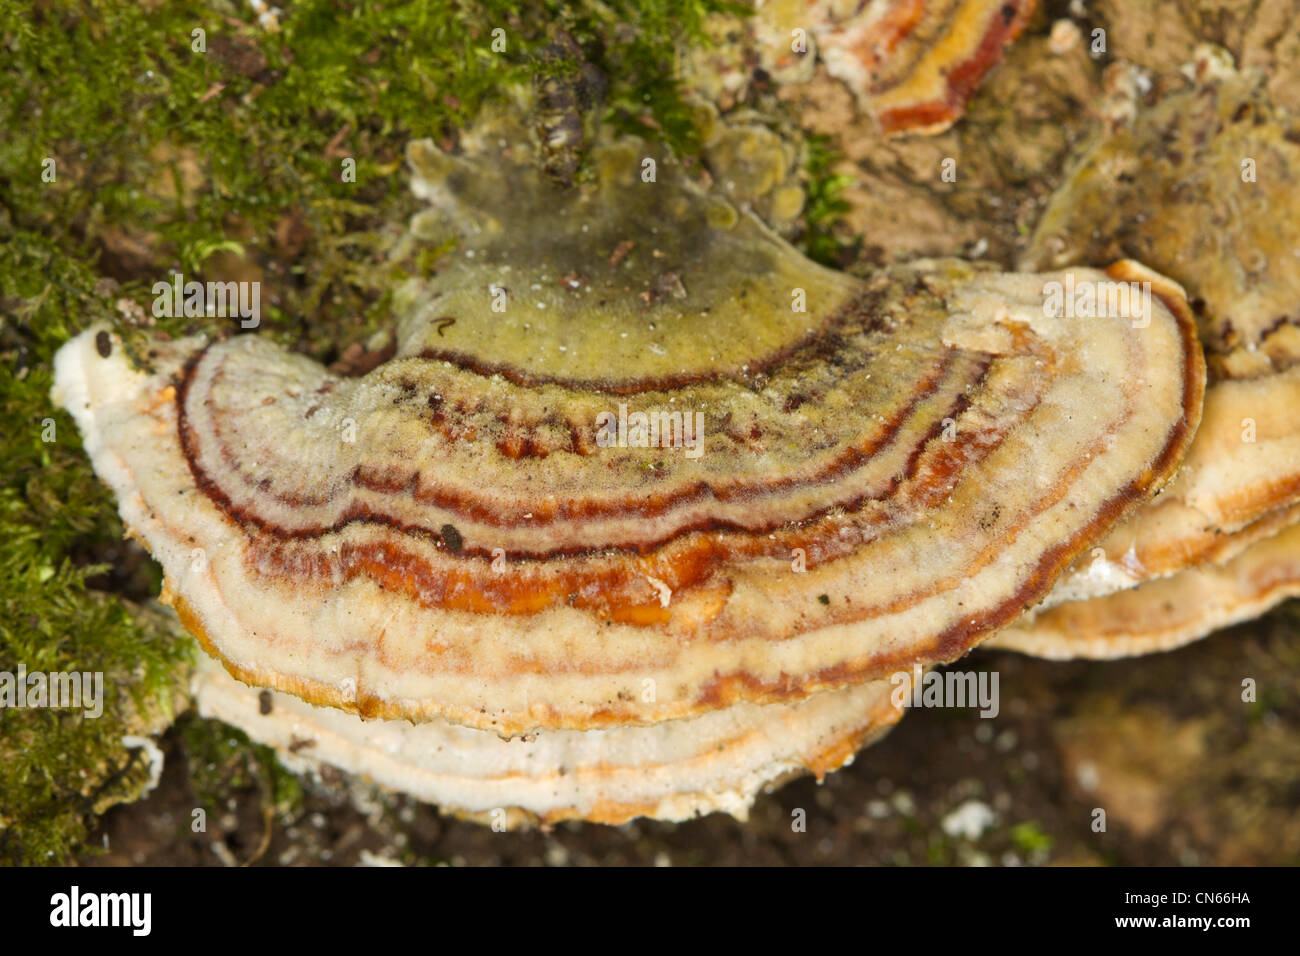 Turkeytail bracket fungus (Coriolus versicolor) Stock Photo